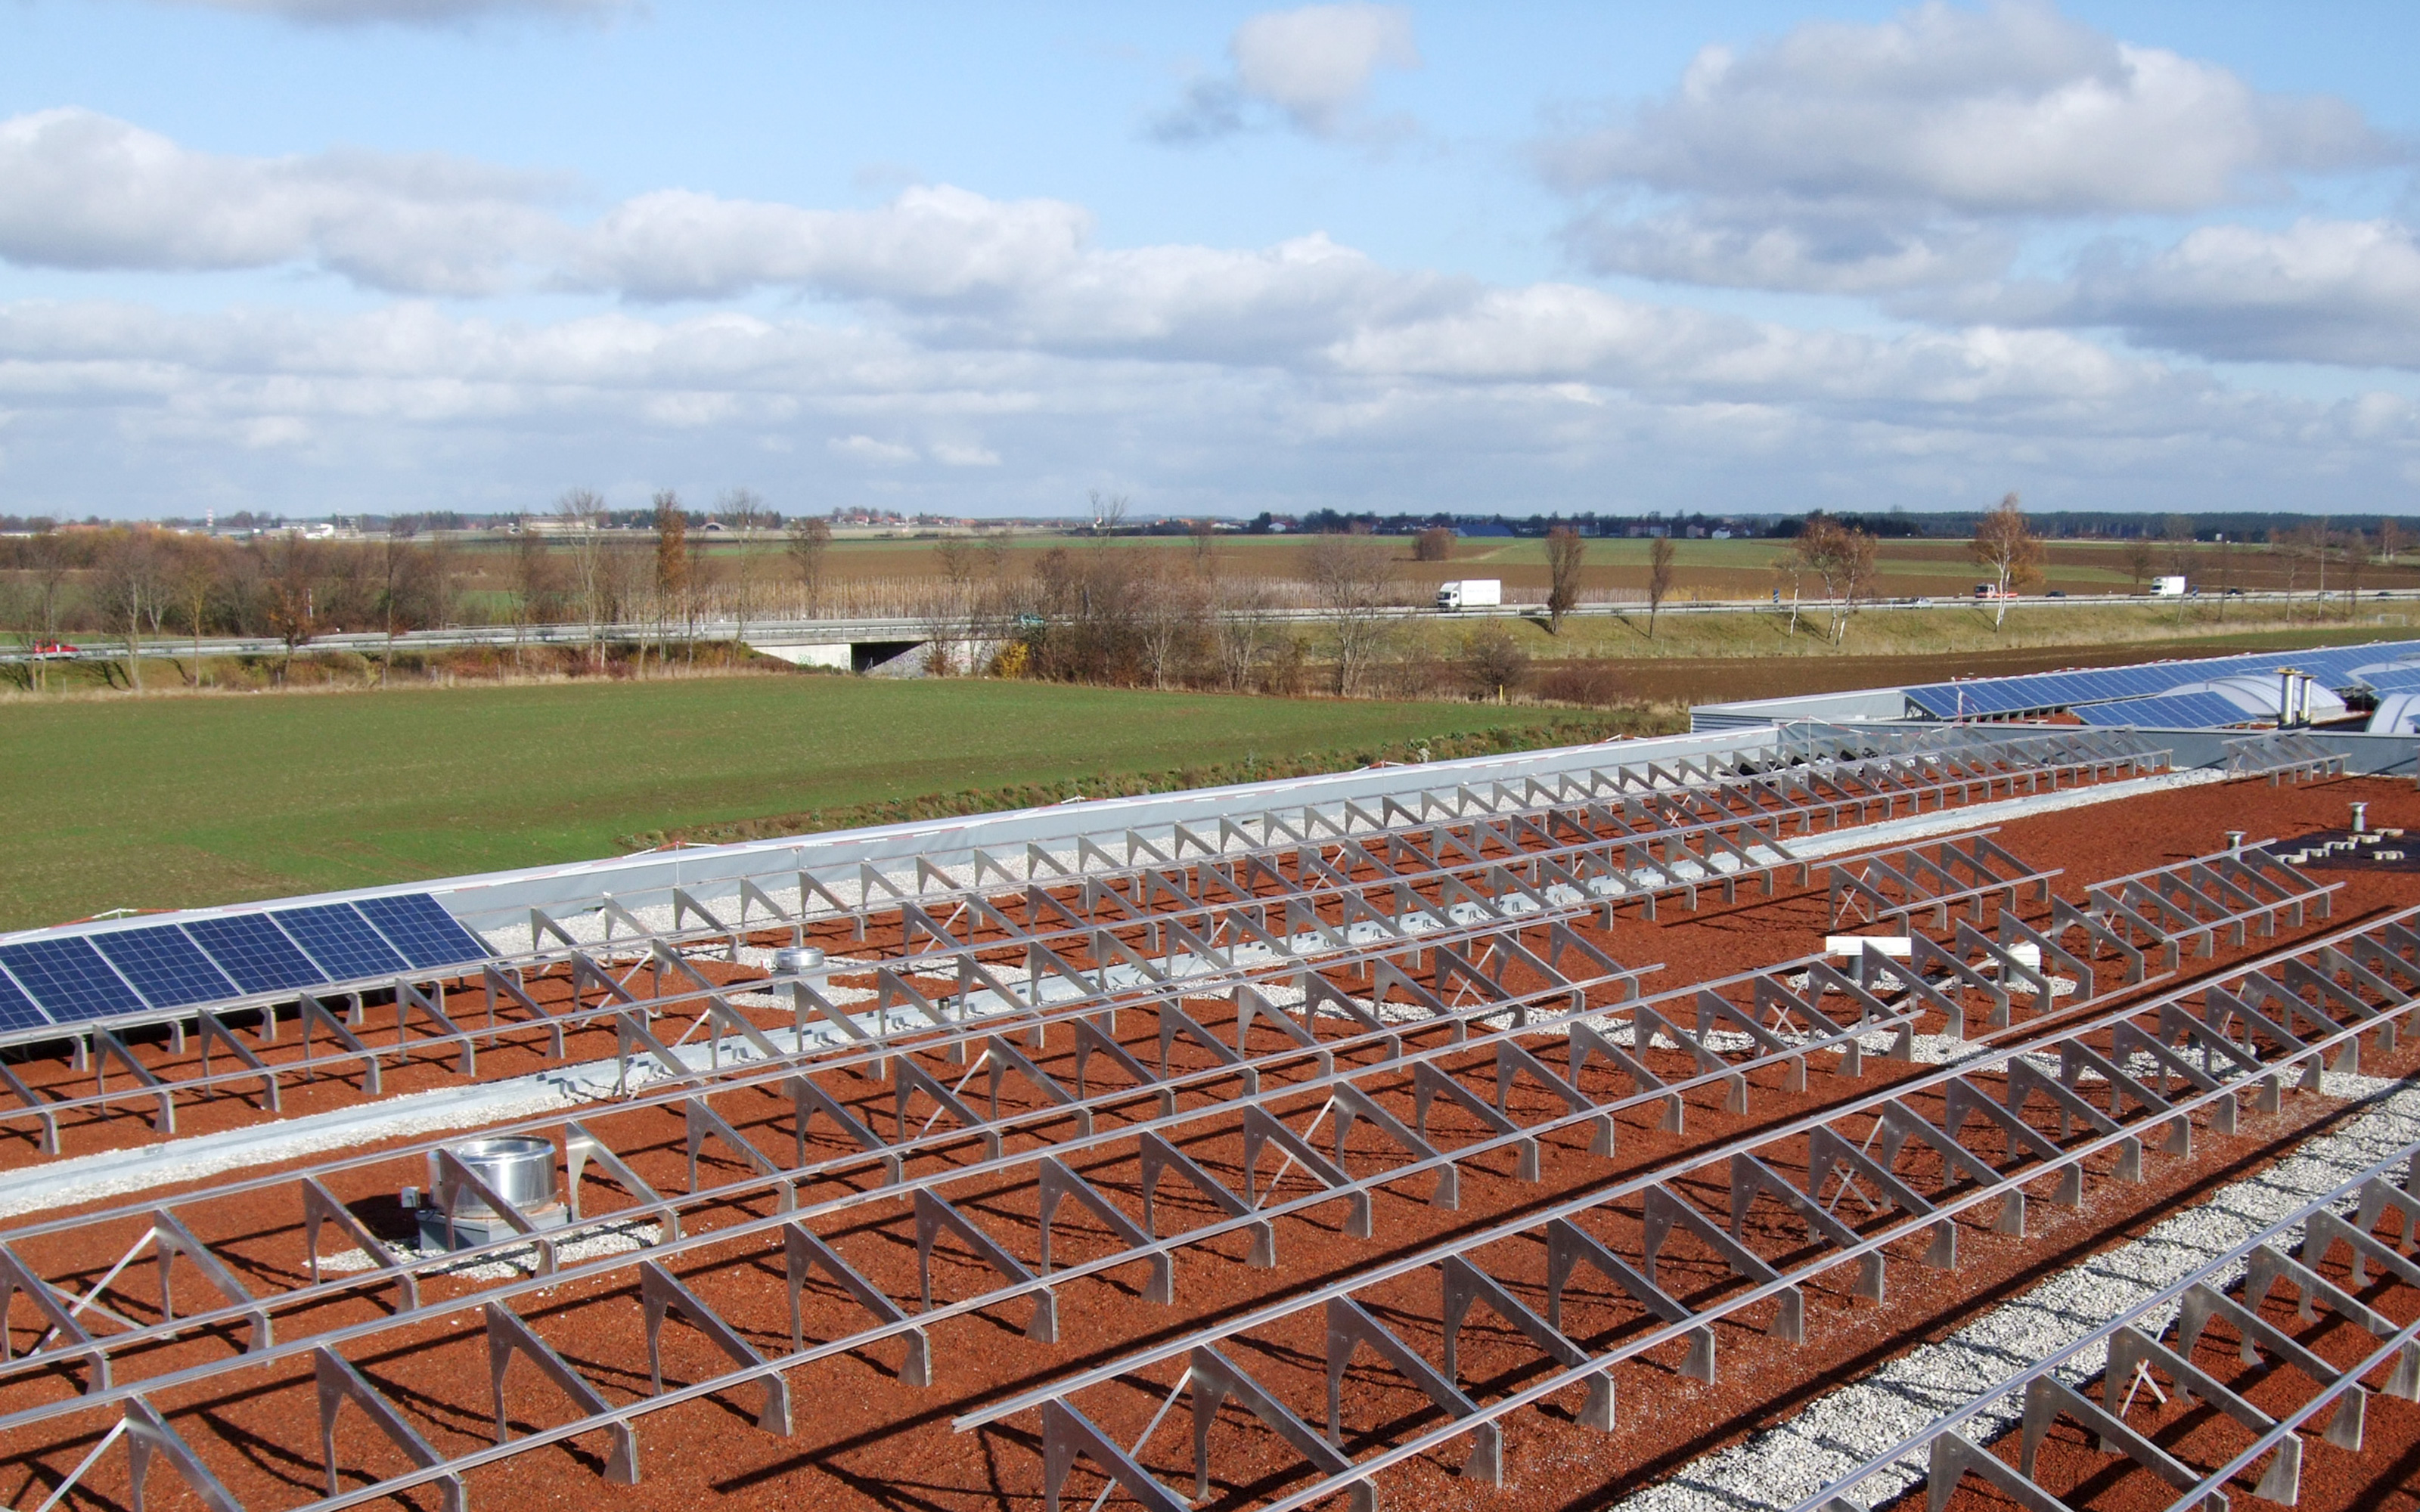 Dach mit Substratschüttung und aufgebauten Solargrundrahmen